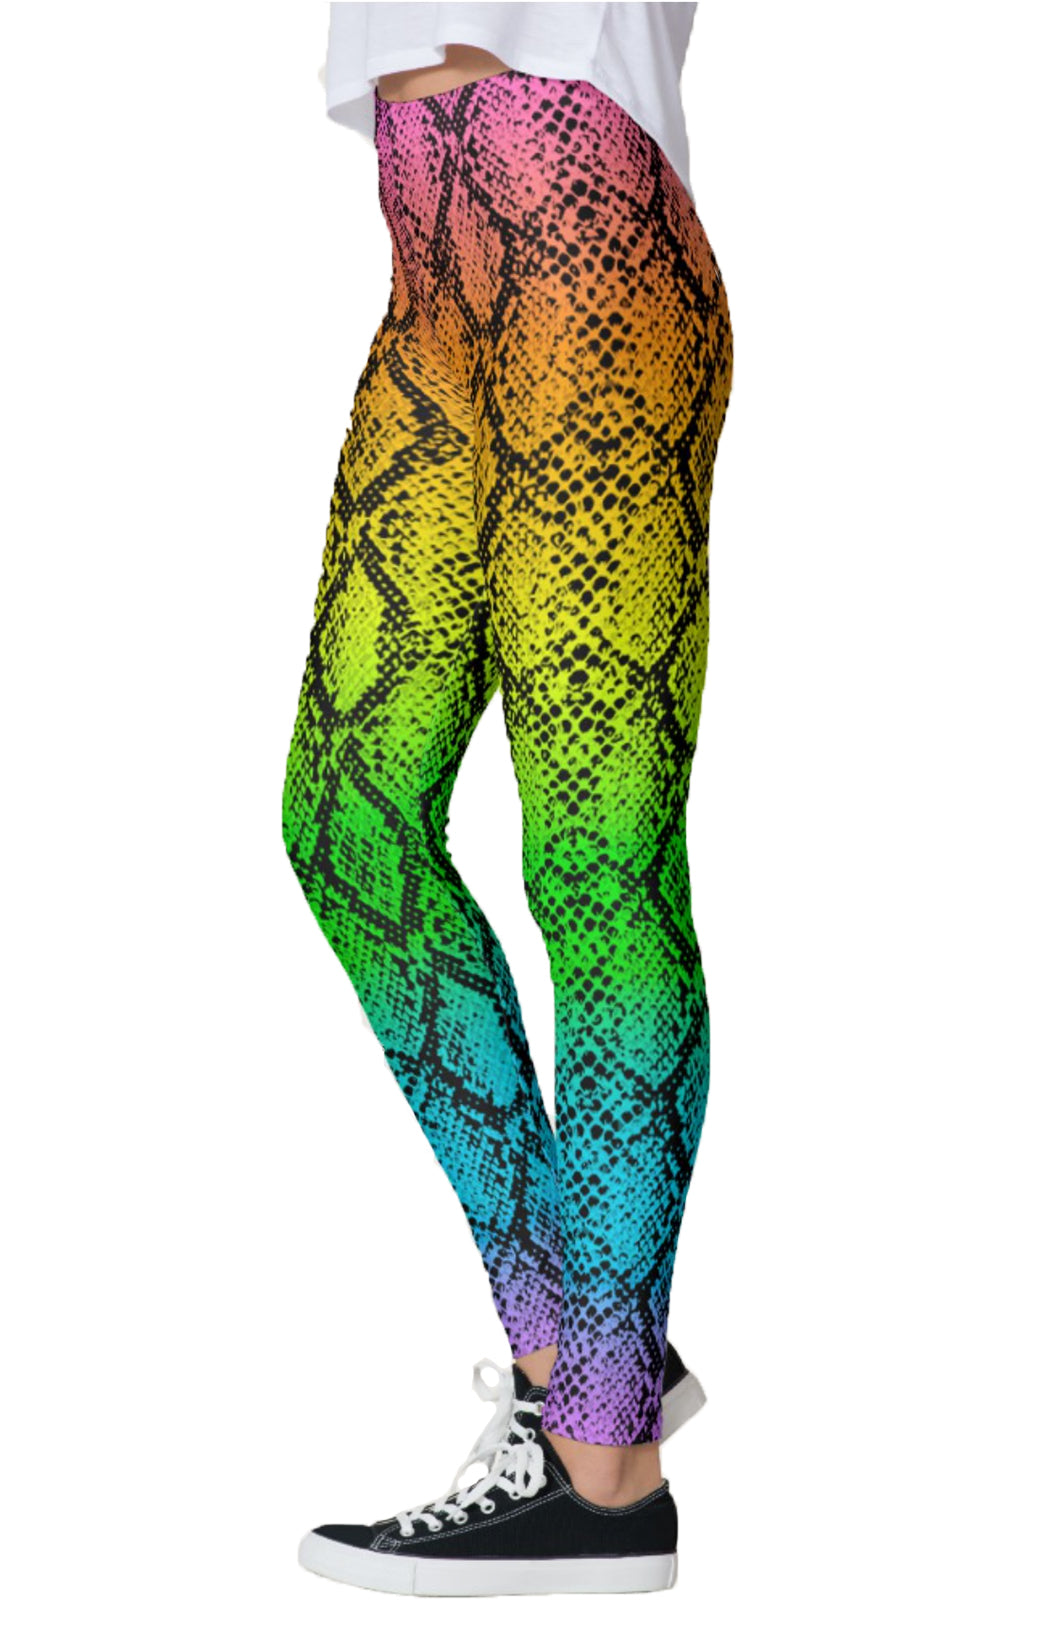  Ctreela Metallic Leggings for Women's Snakeskin